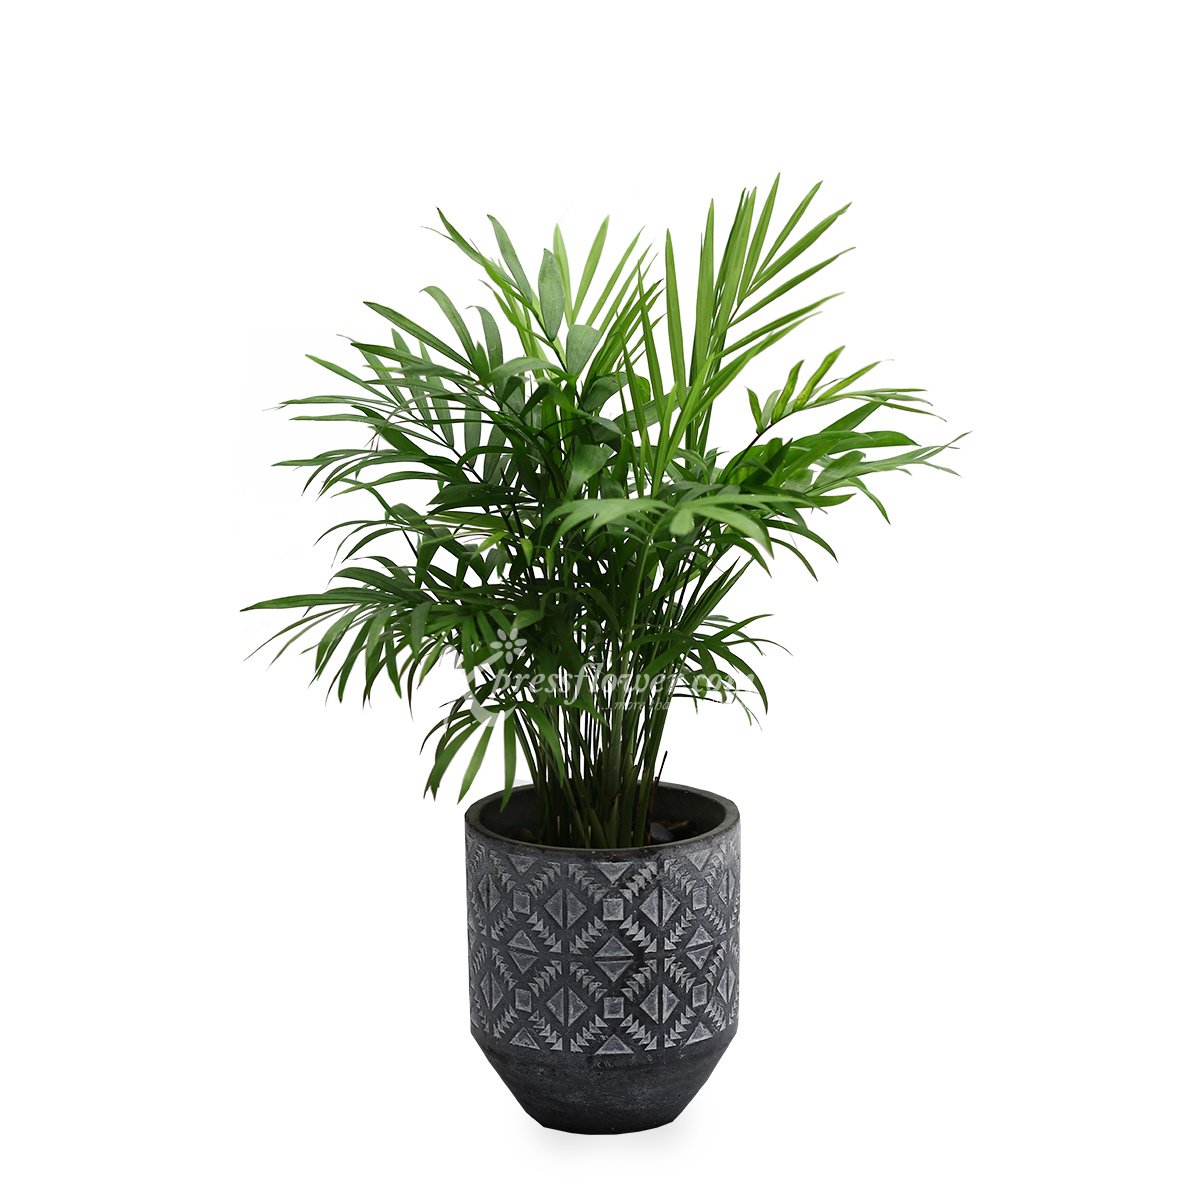 Green Thumbs (Mini Palm Tree Plant)